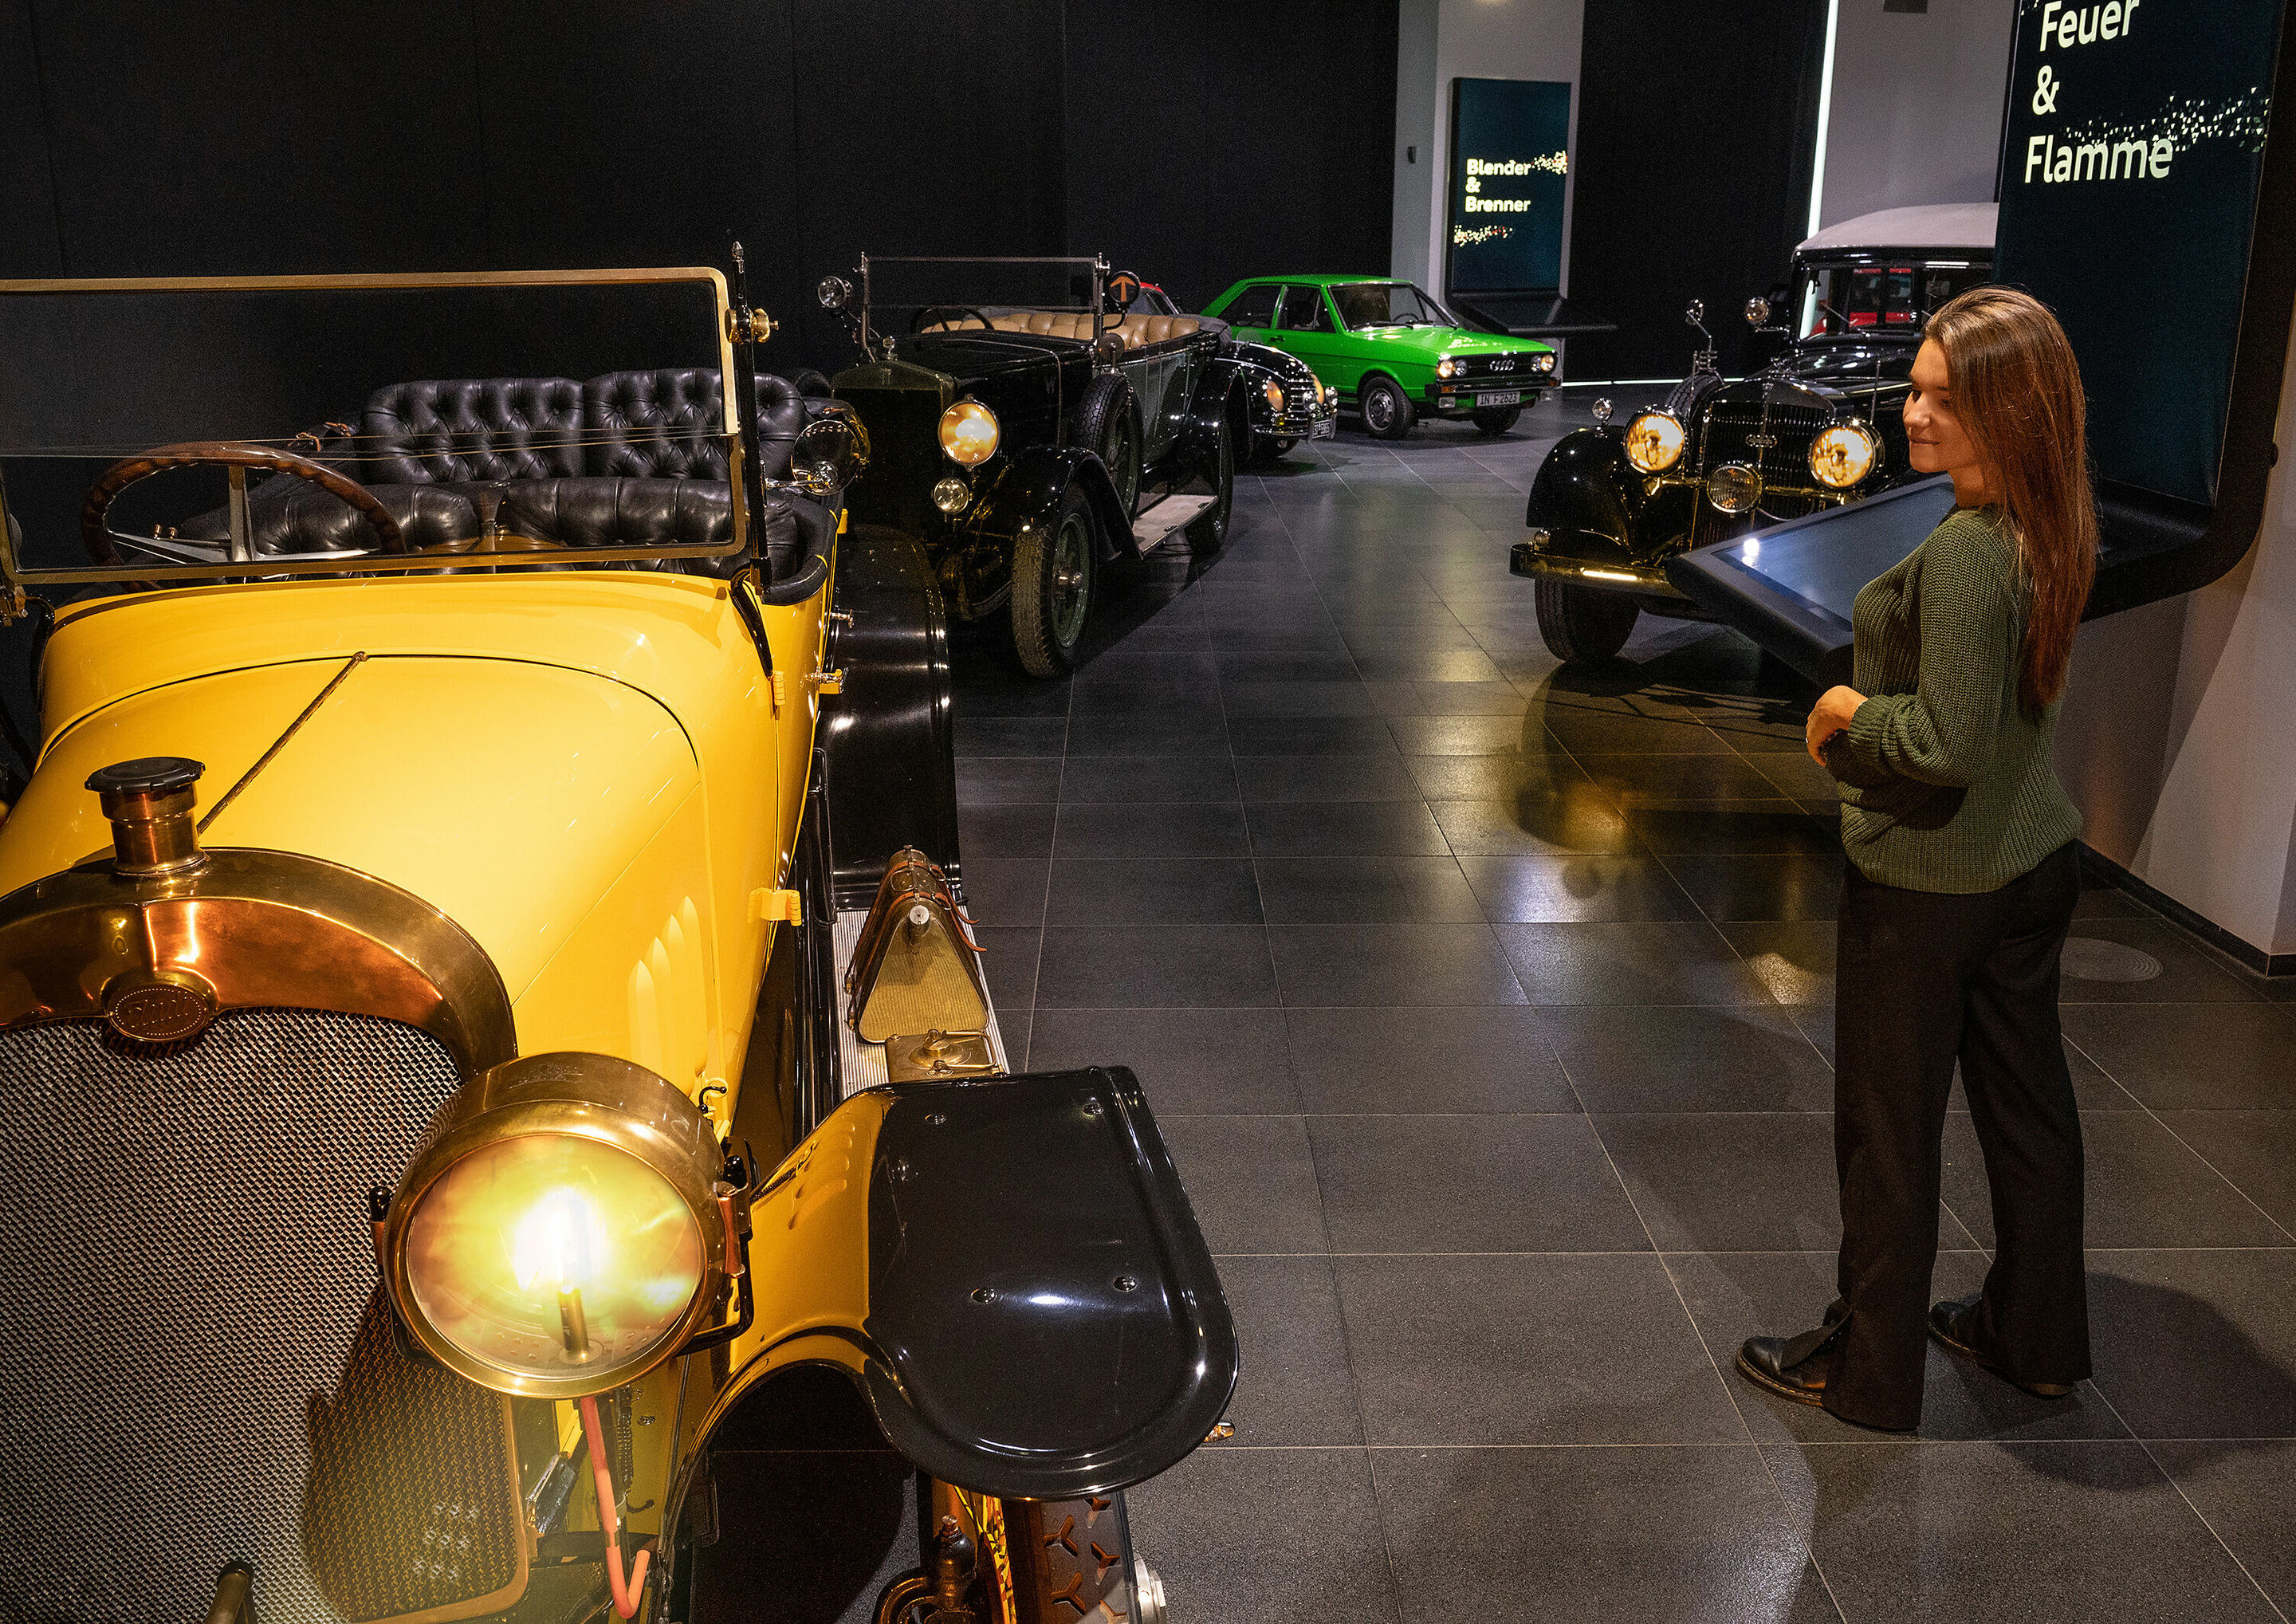 Automobile Lichtgestalten: Sonderausstellung „The Speed of Light“ im Audi museum mobile